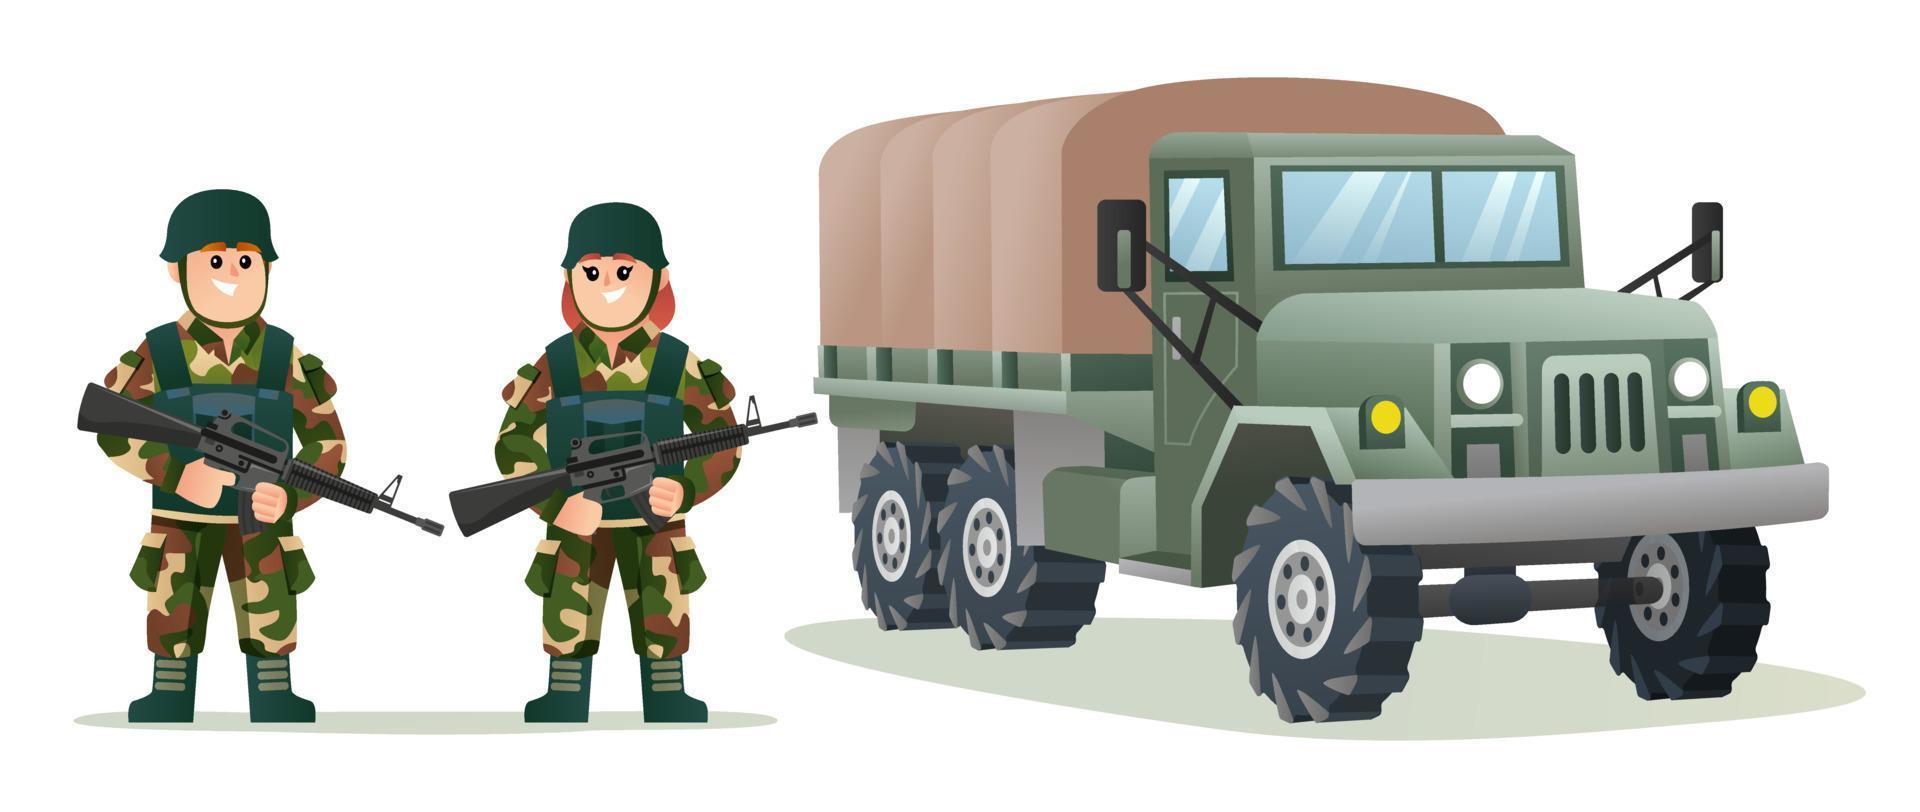 simpatici soldati dell'esercito maschio e femmina che tengono pistole arma con l'illustrazione del fumetto del camion militare vettore